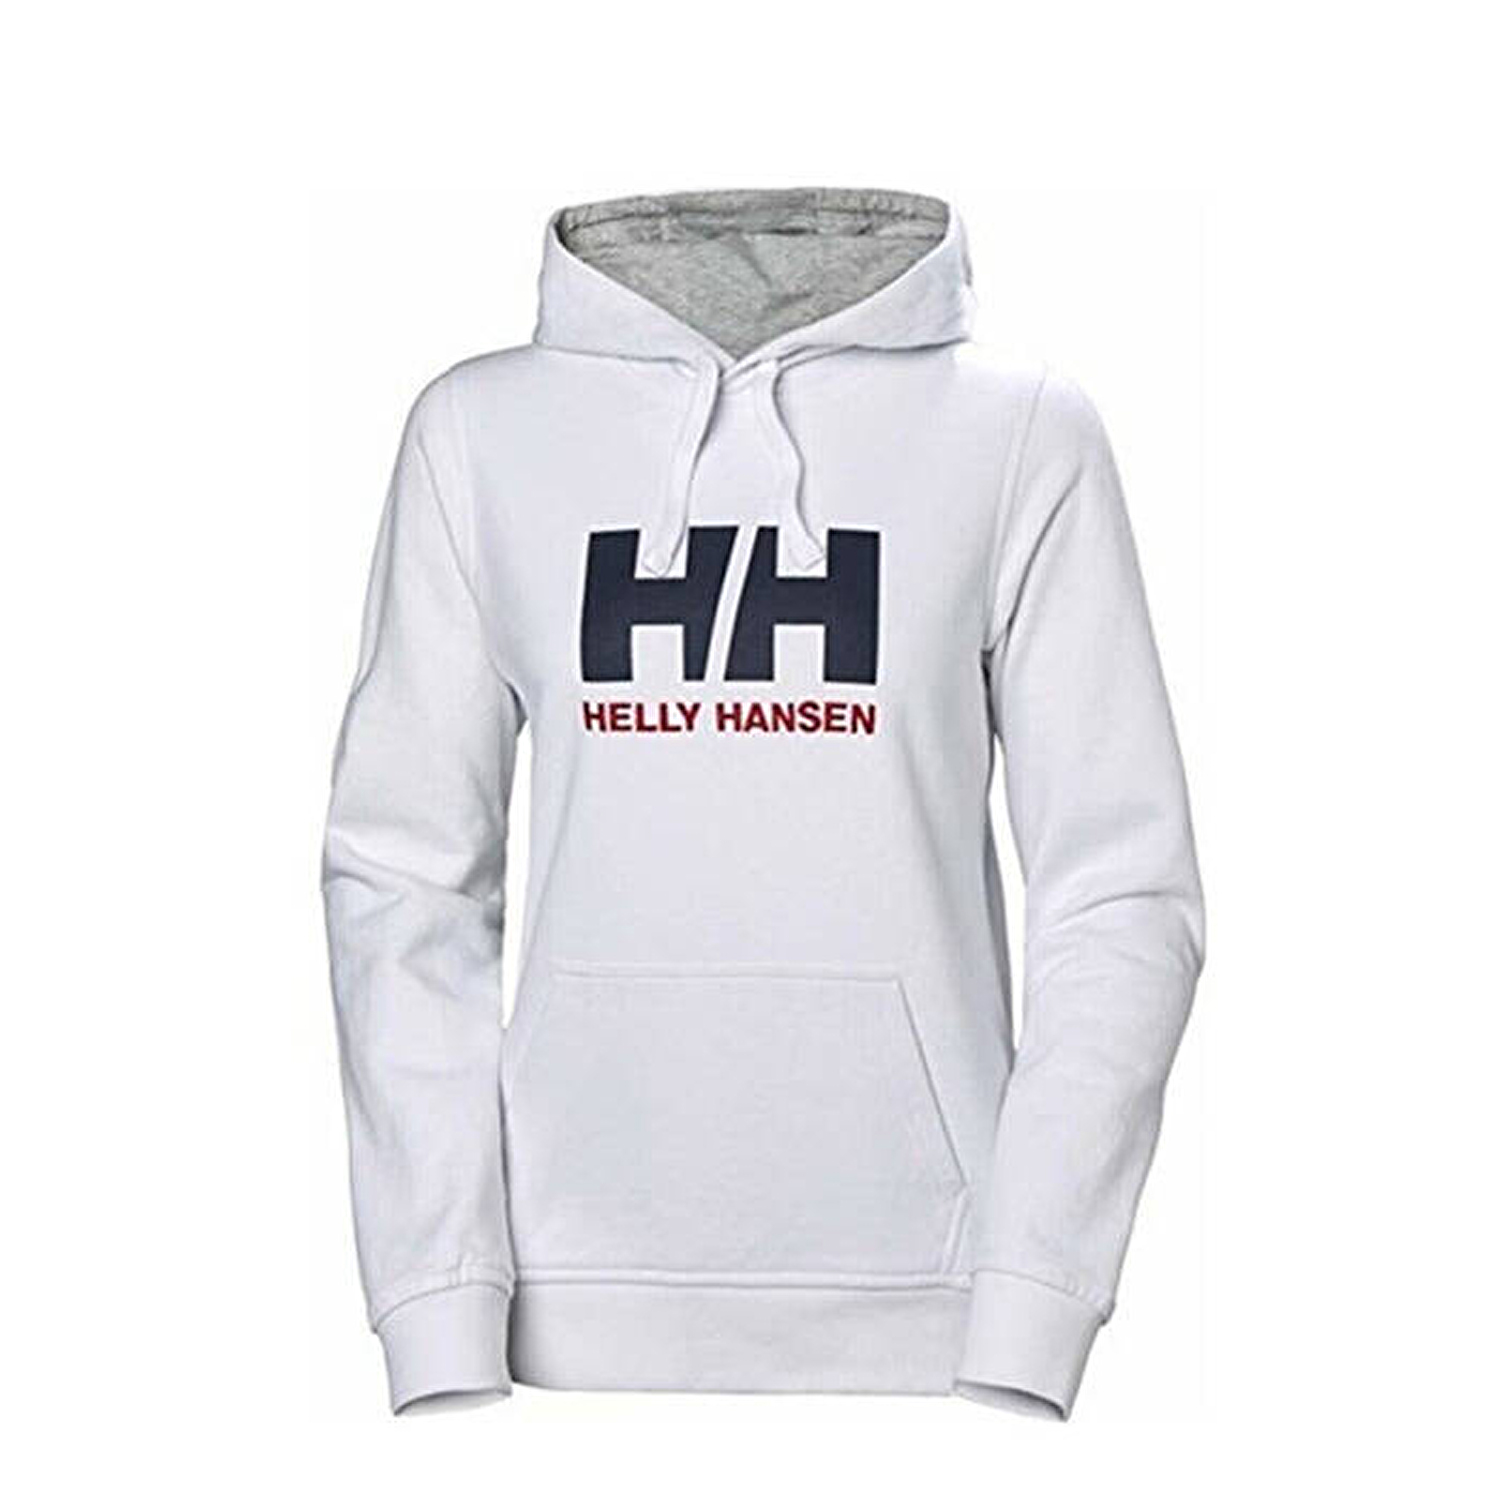 W Hh Logo Hoodie Kadın Sweatshirt